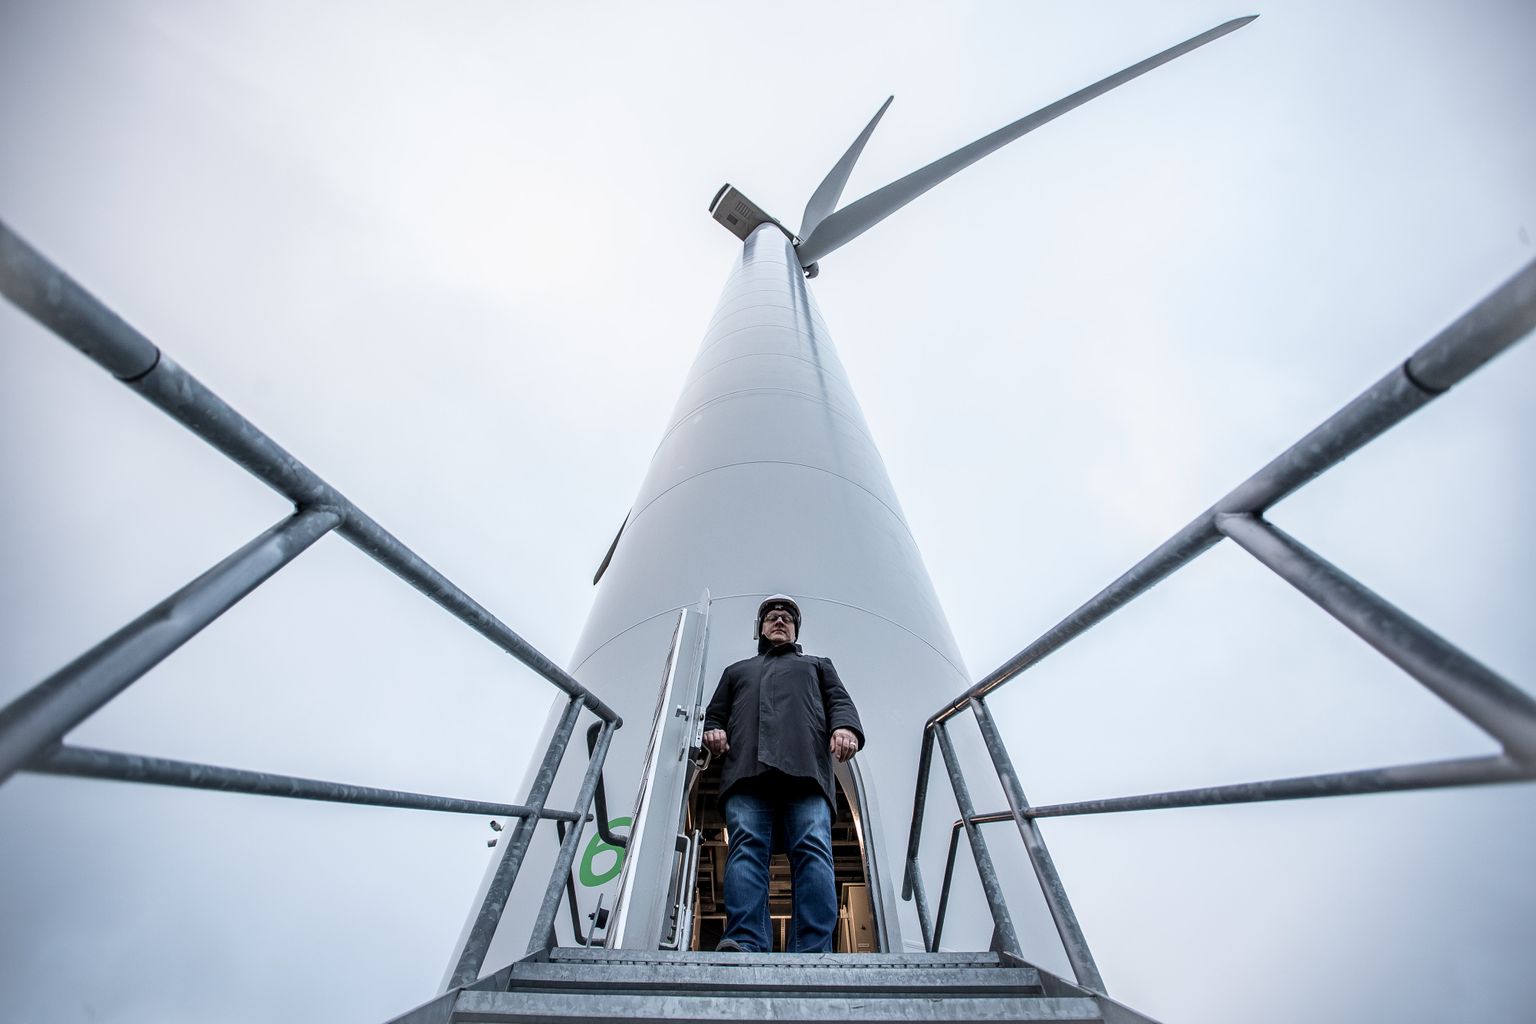 Eesti Energia taastuvenergia ettevõtte Enefit Green, mida juhib Aavo Kärmas (pildil), on Tootsi tuulepargist väga huvitatud, kuna on vaidlusalusel maal juba mitu aastat ettevalmistusi teinud.